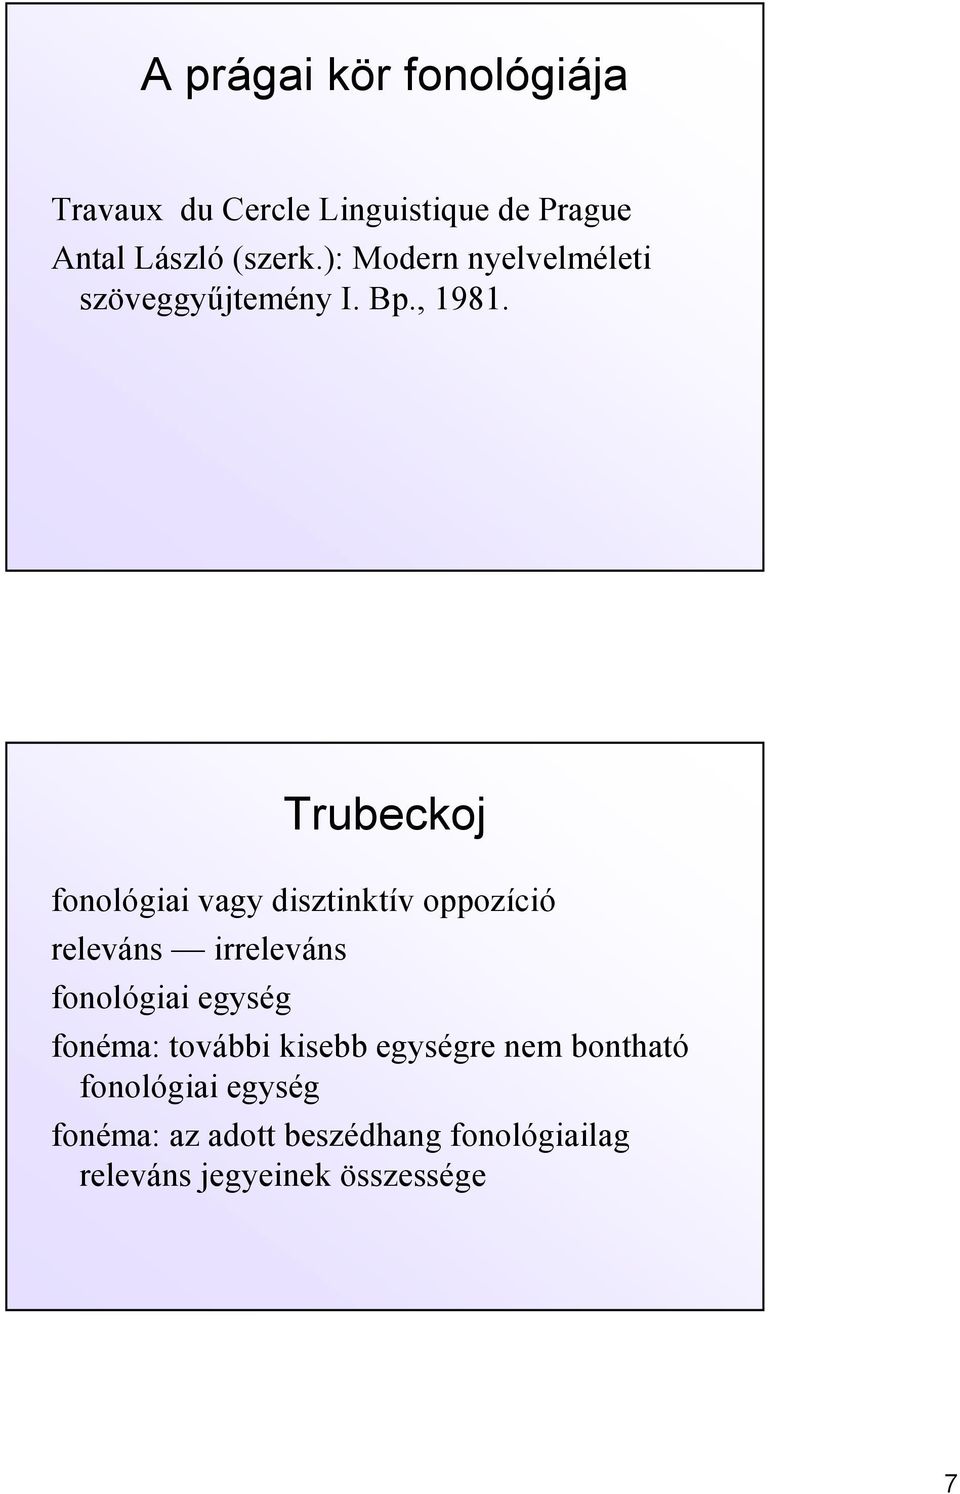 Trubeckoj fonológiai vagy disztinktív oppozíció releváns irreleváns fonológiai egység